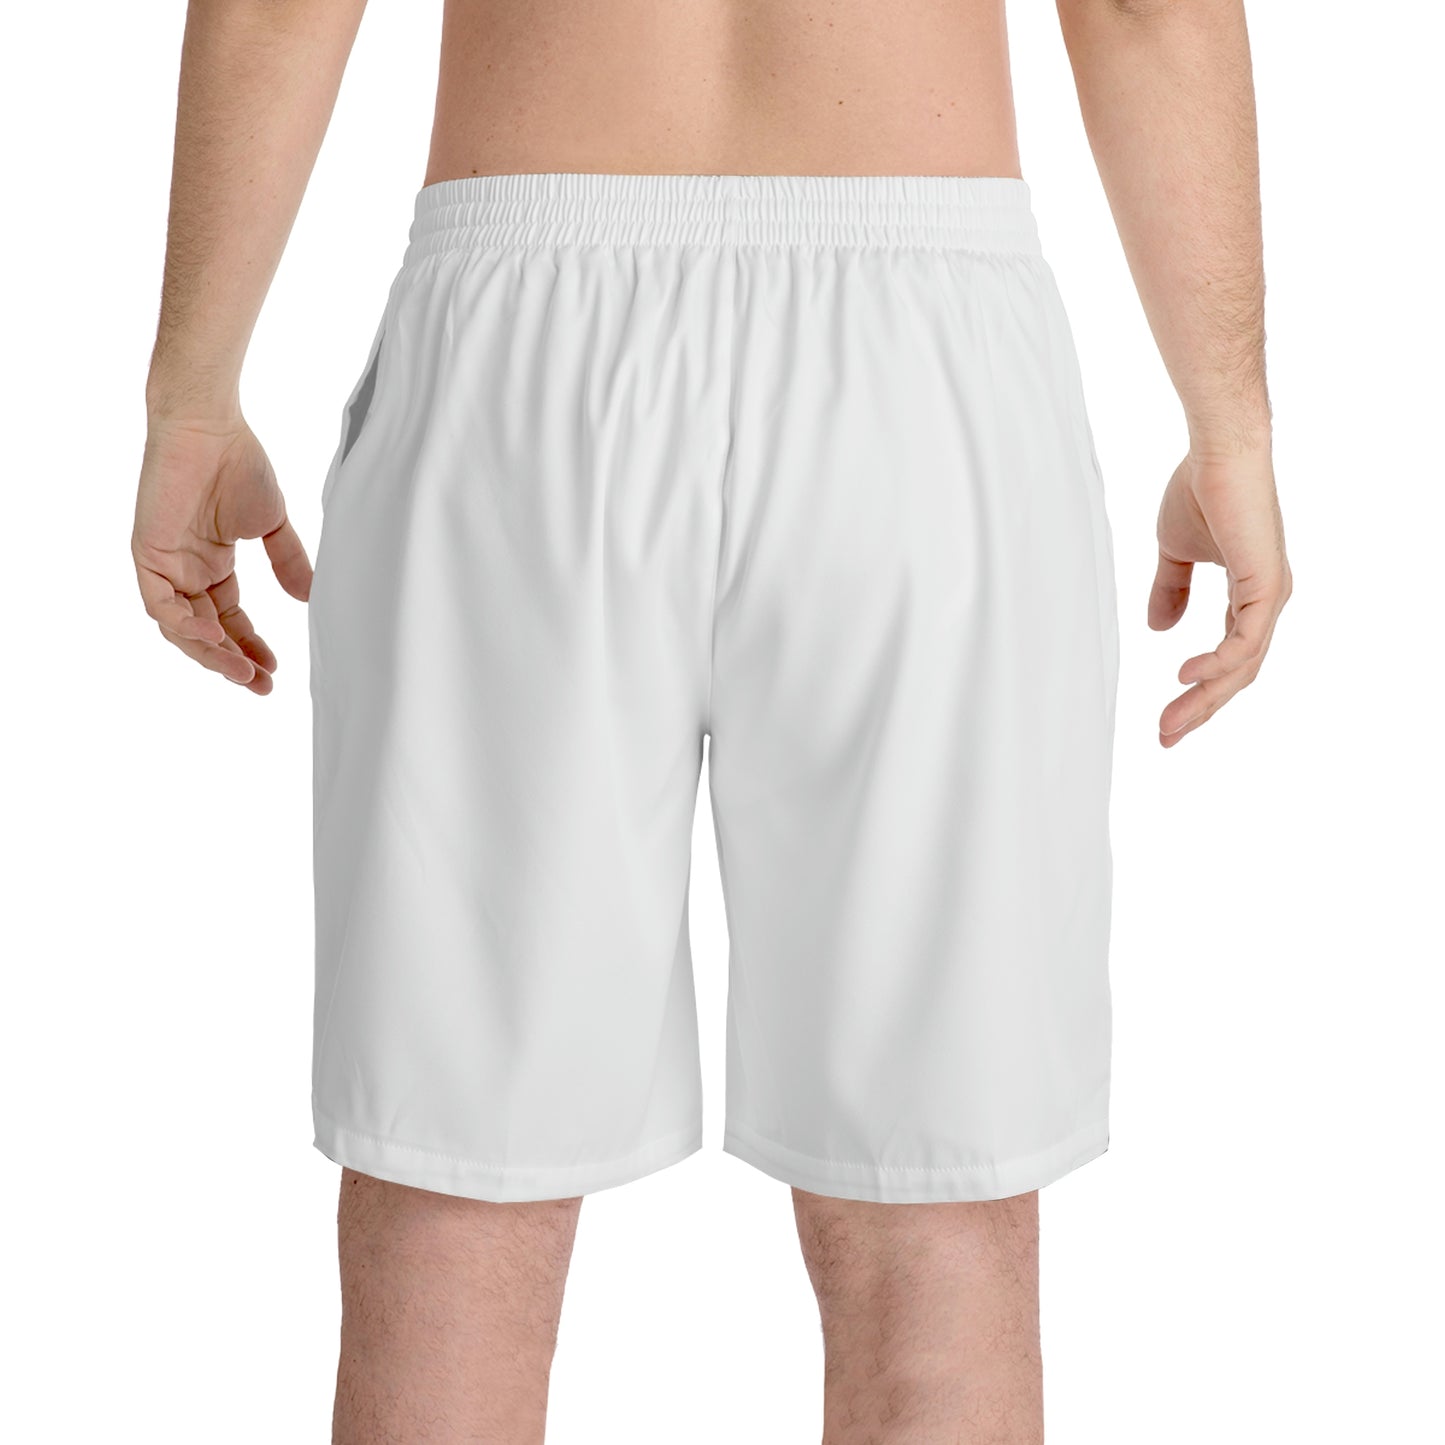 White Men's Elastic Beach Shorts